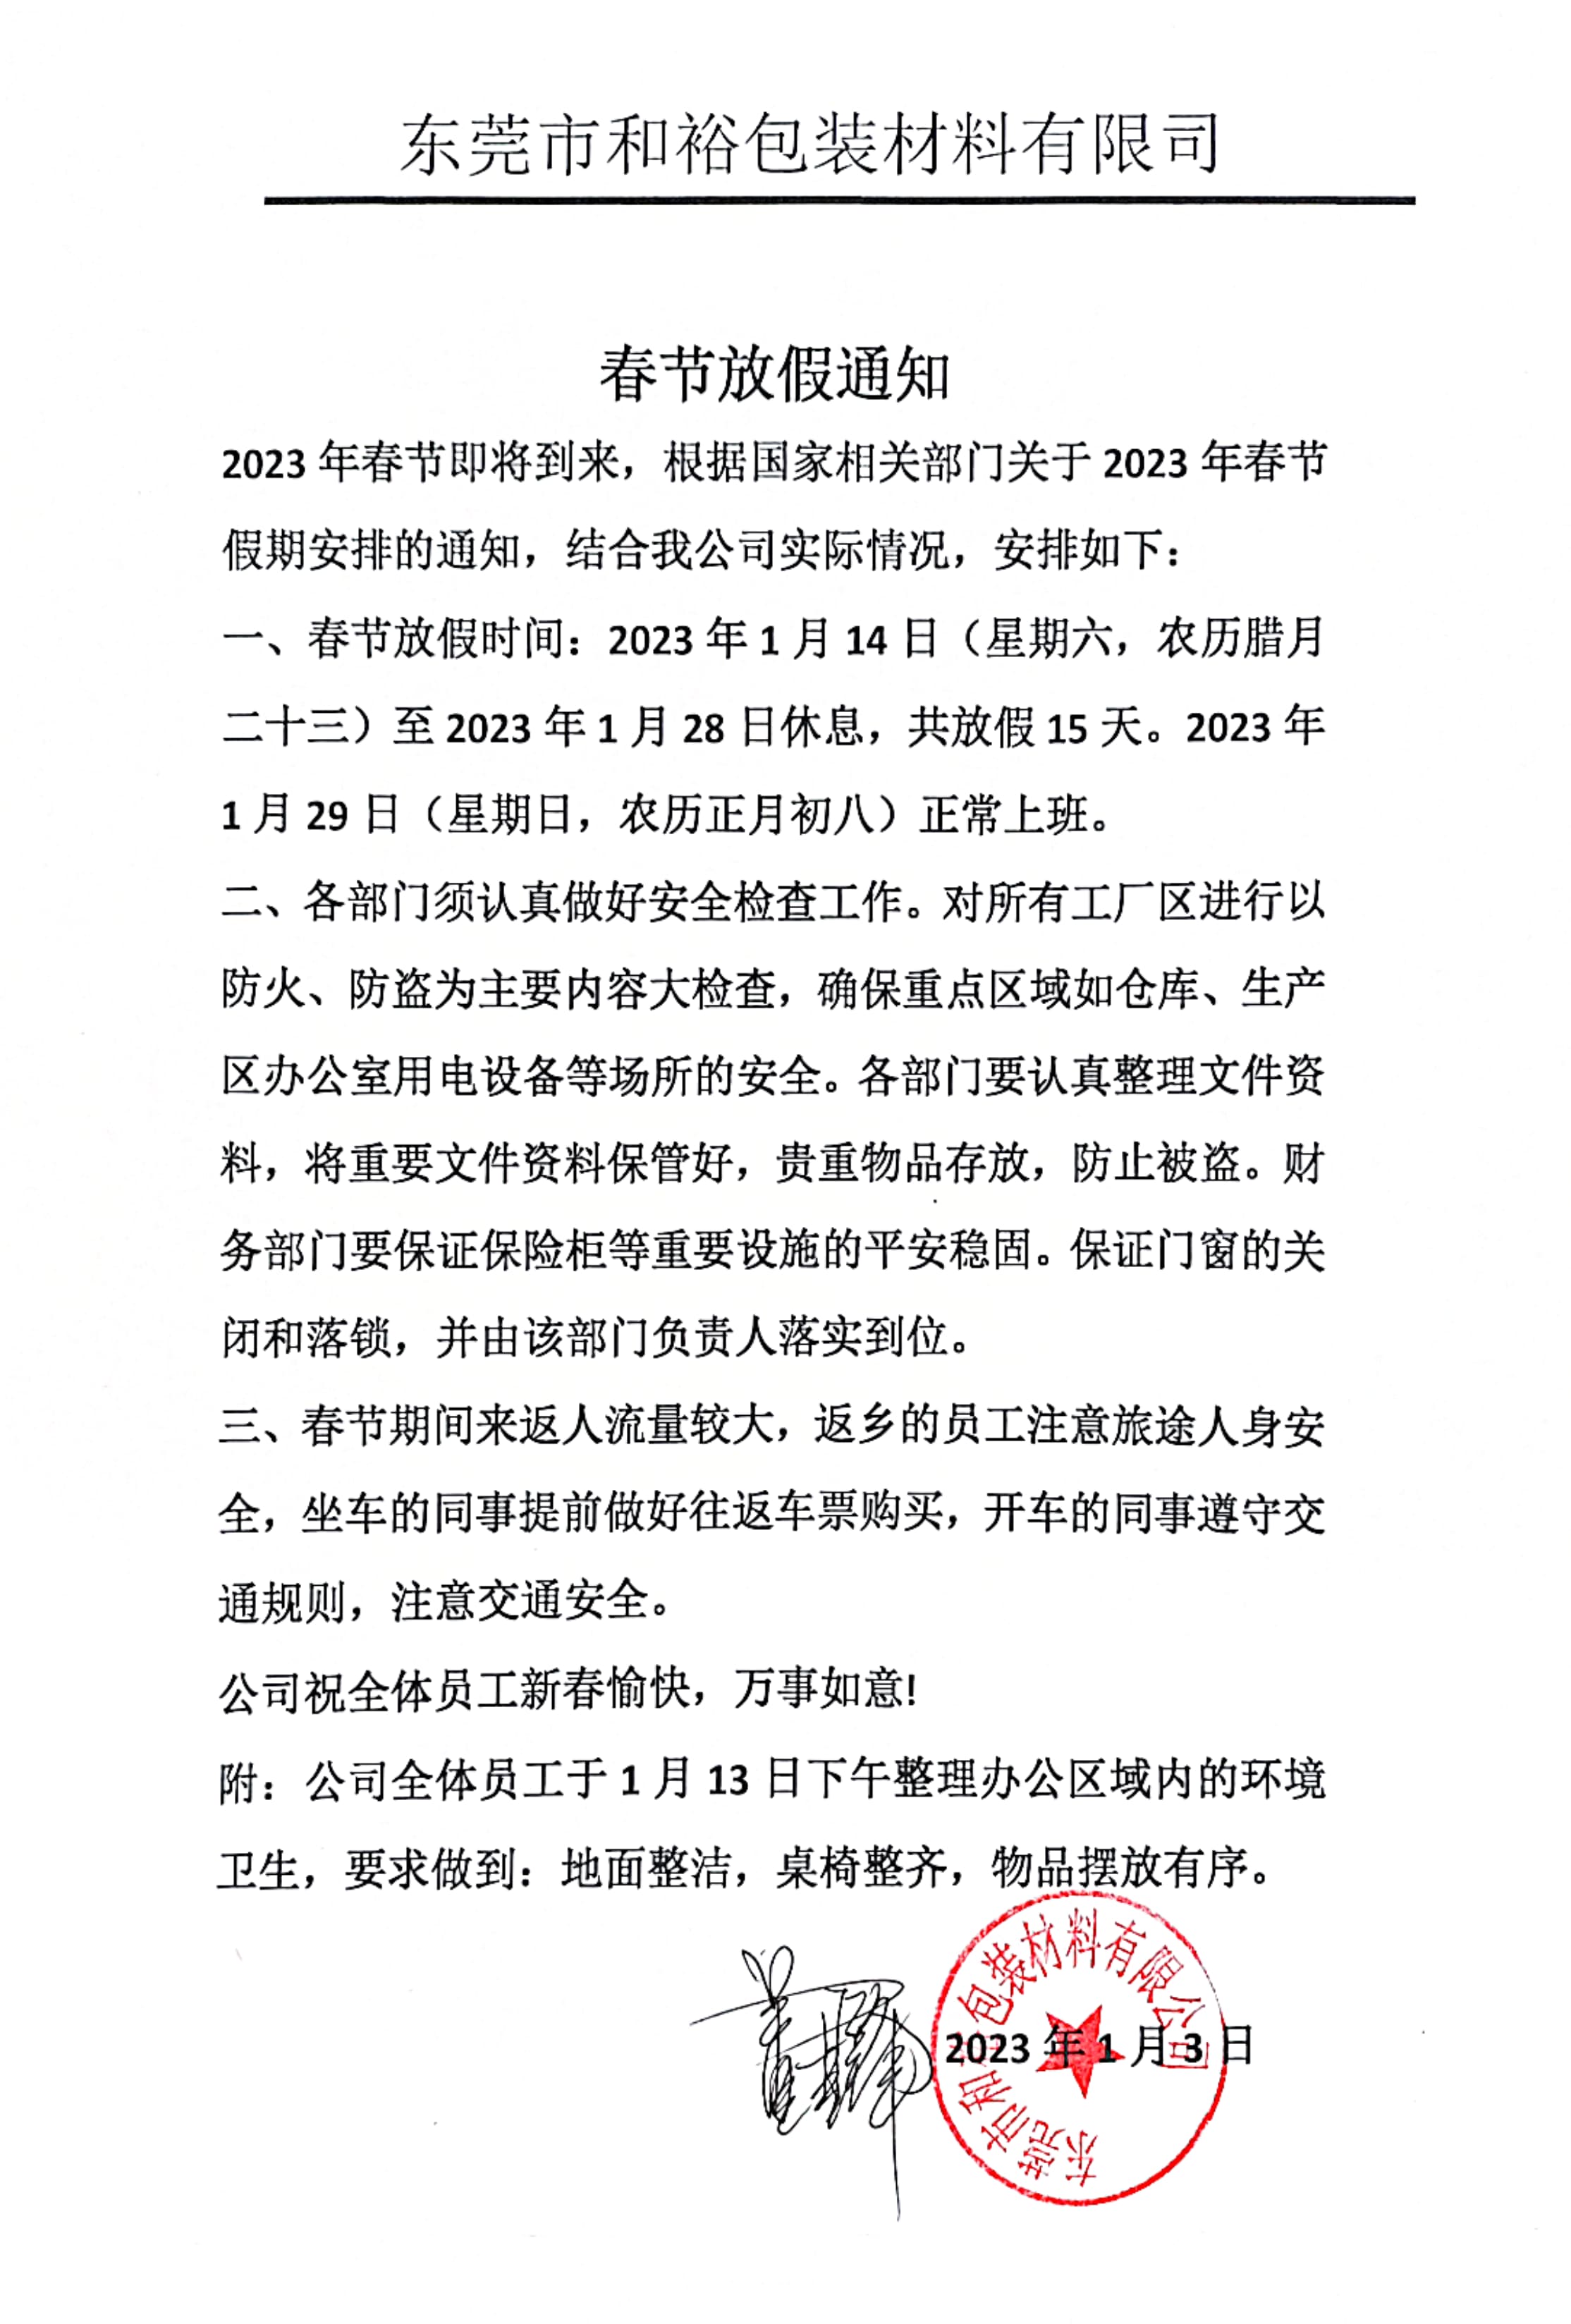 福鼎市2023年和裕包装春节放假通知